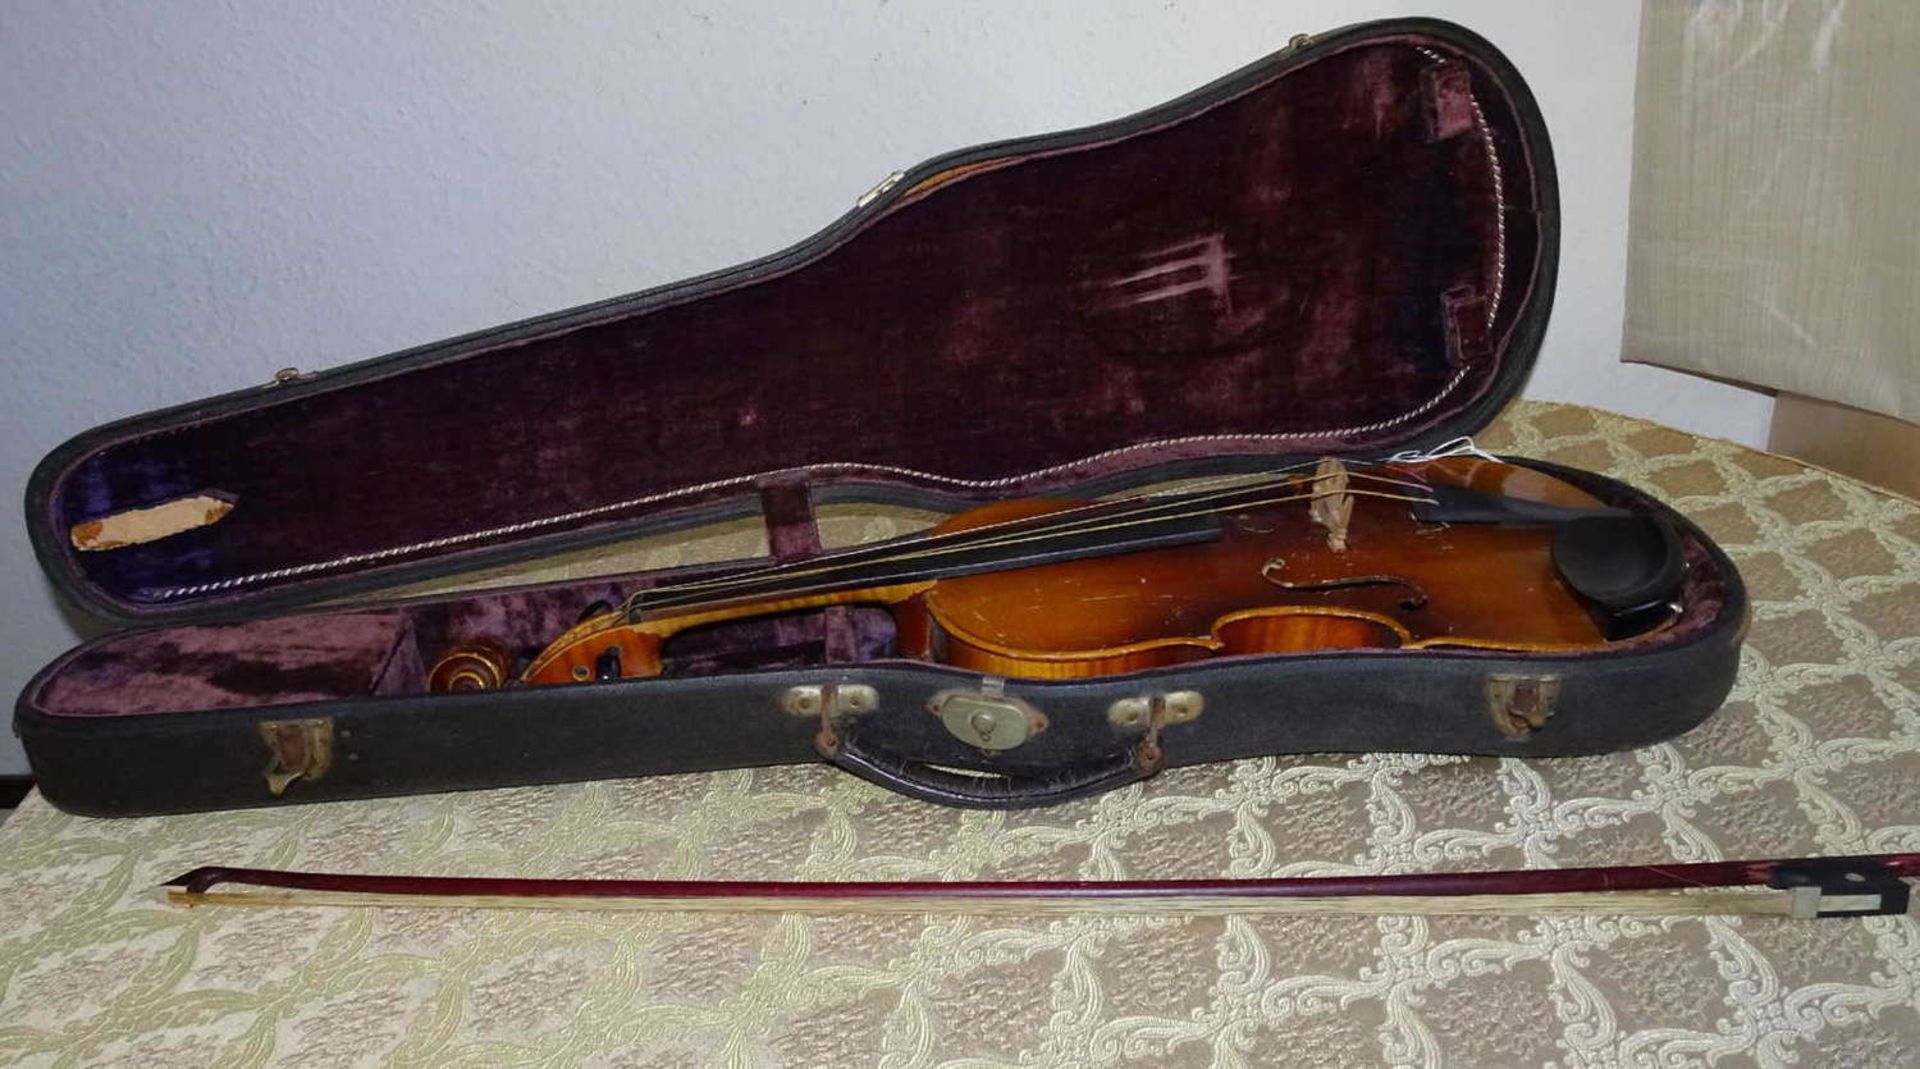 Violine, Copy of Antonius Stradivarius im Violinenkasten, ca. 100 Jahre alt.